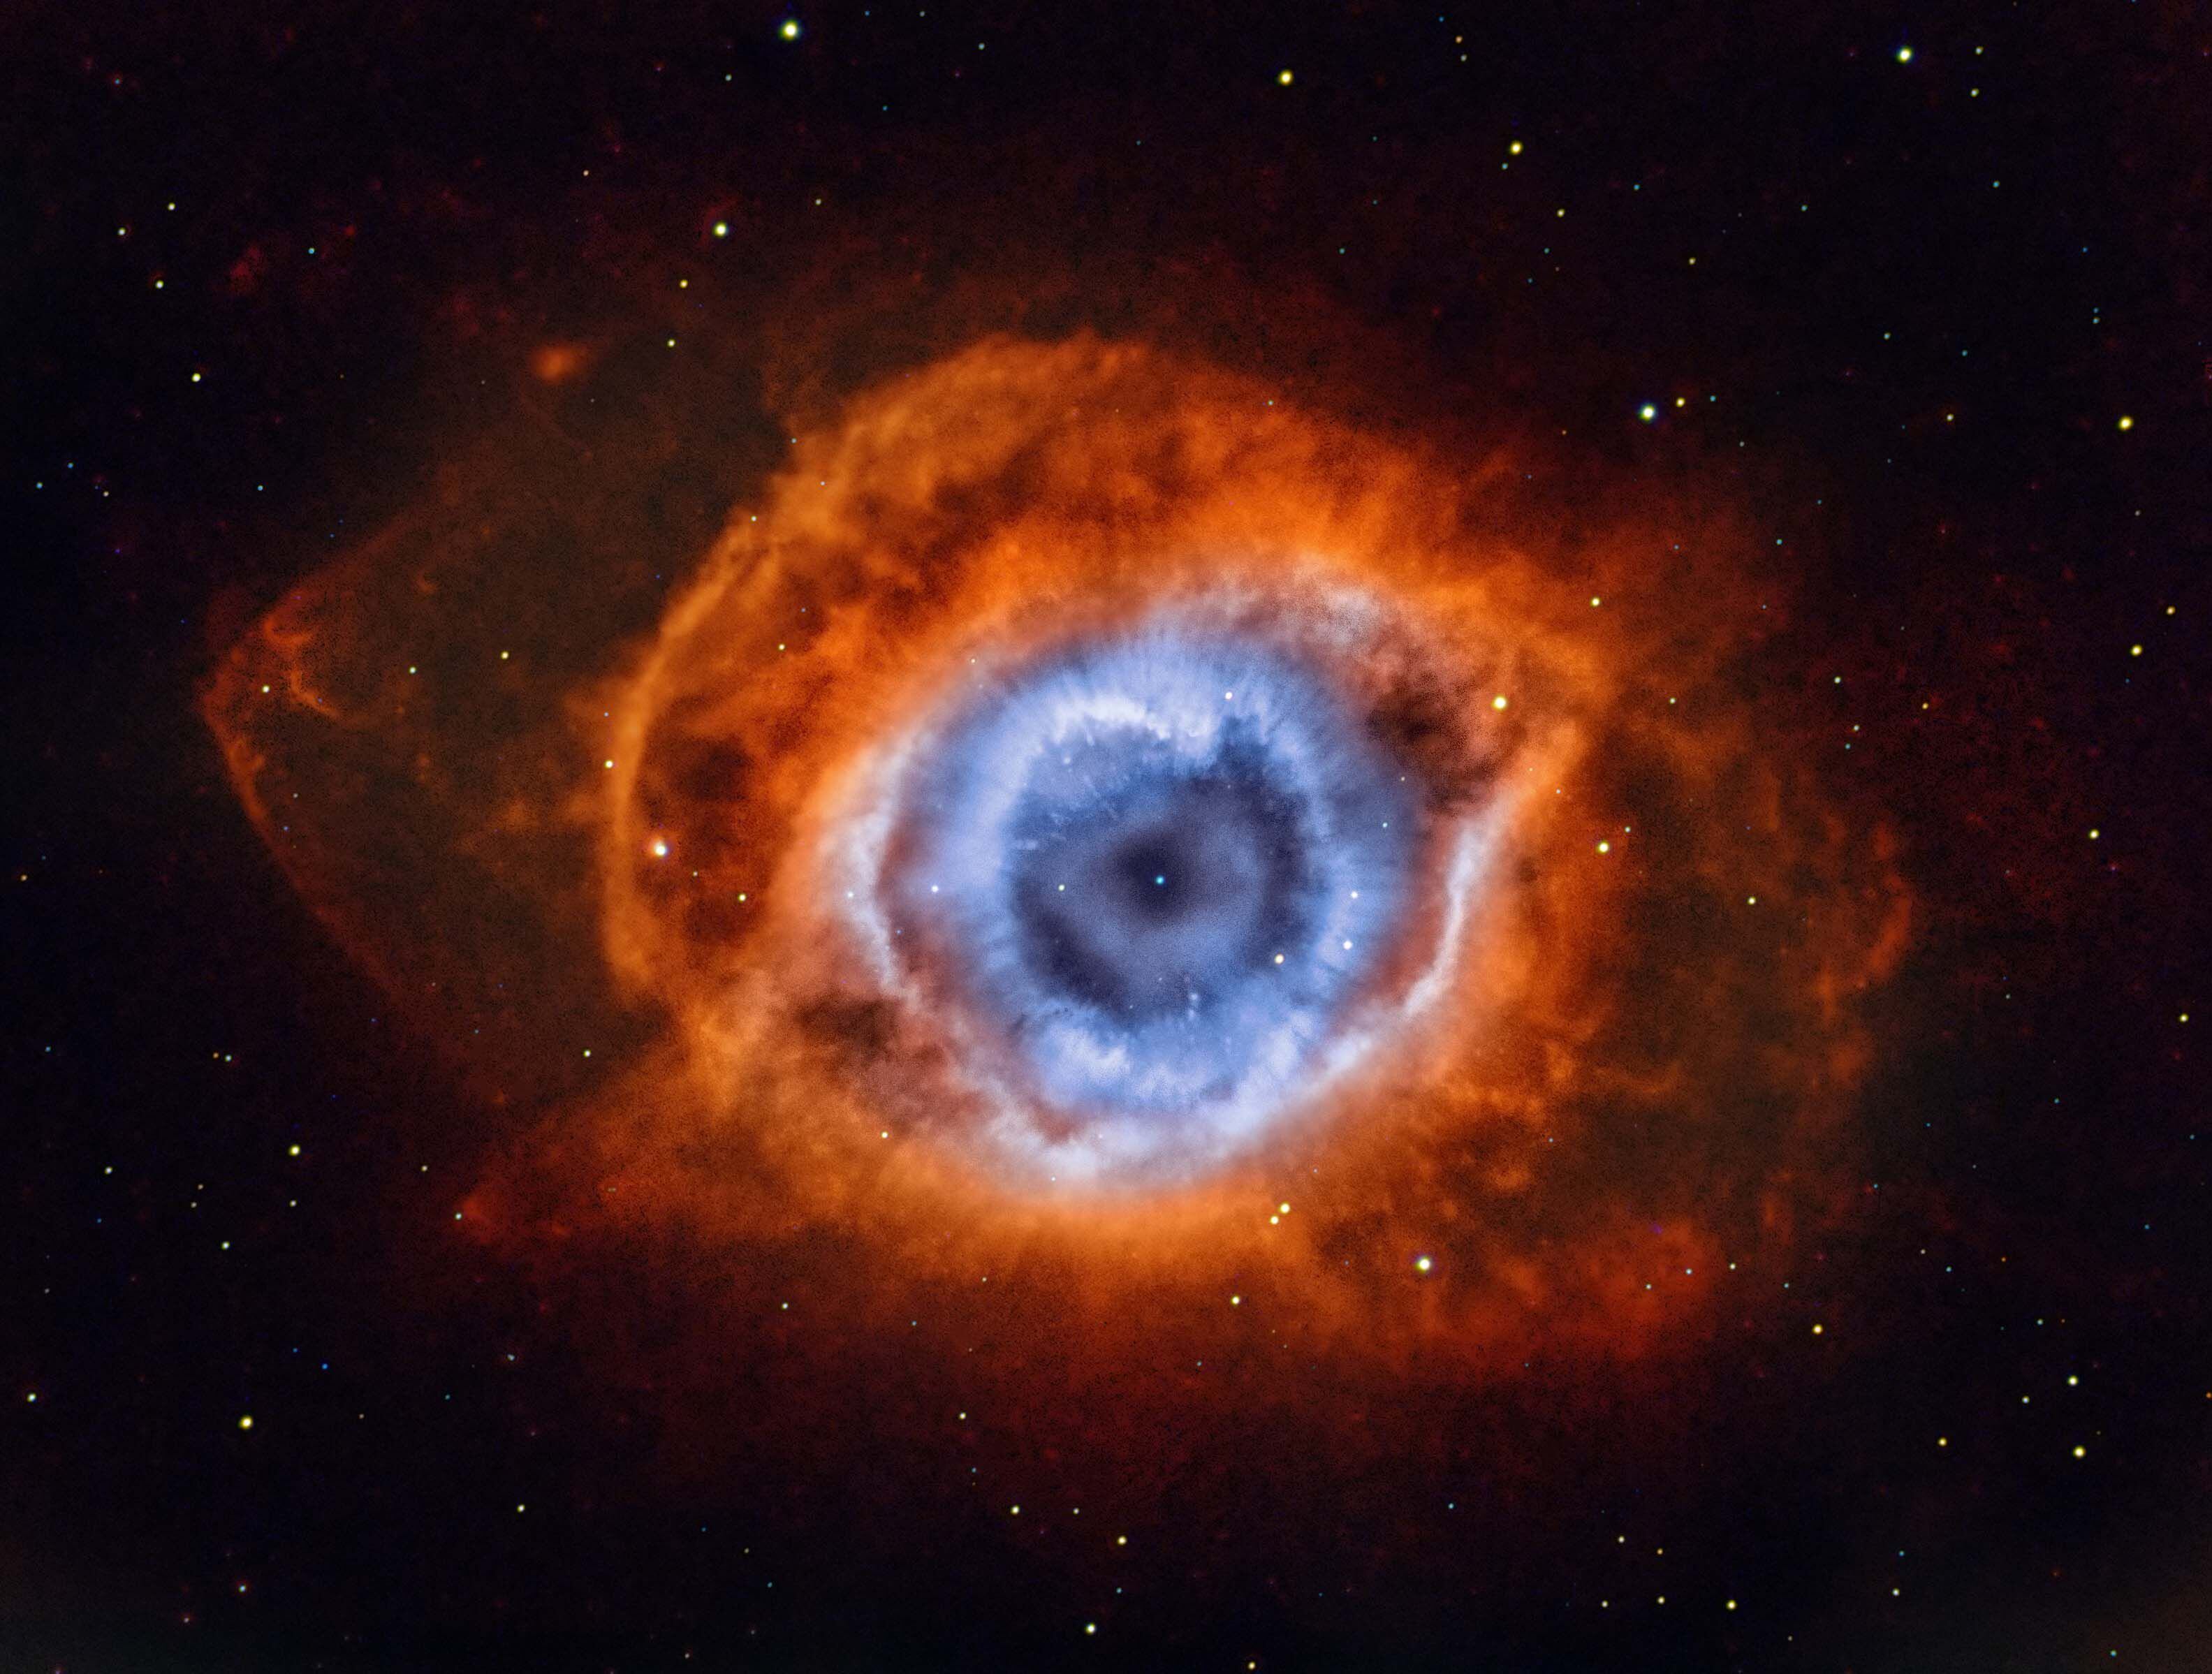 telescopio espacial hubble detecta el ‘ojo de dios’ a casi 700 años luz de distancia de la tierra